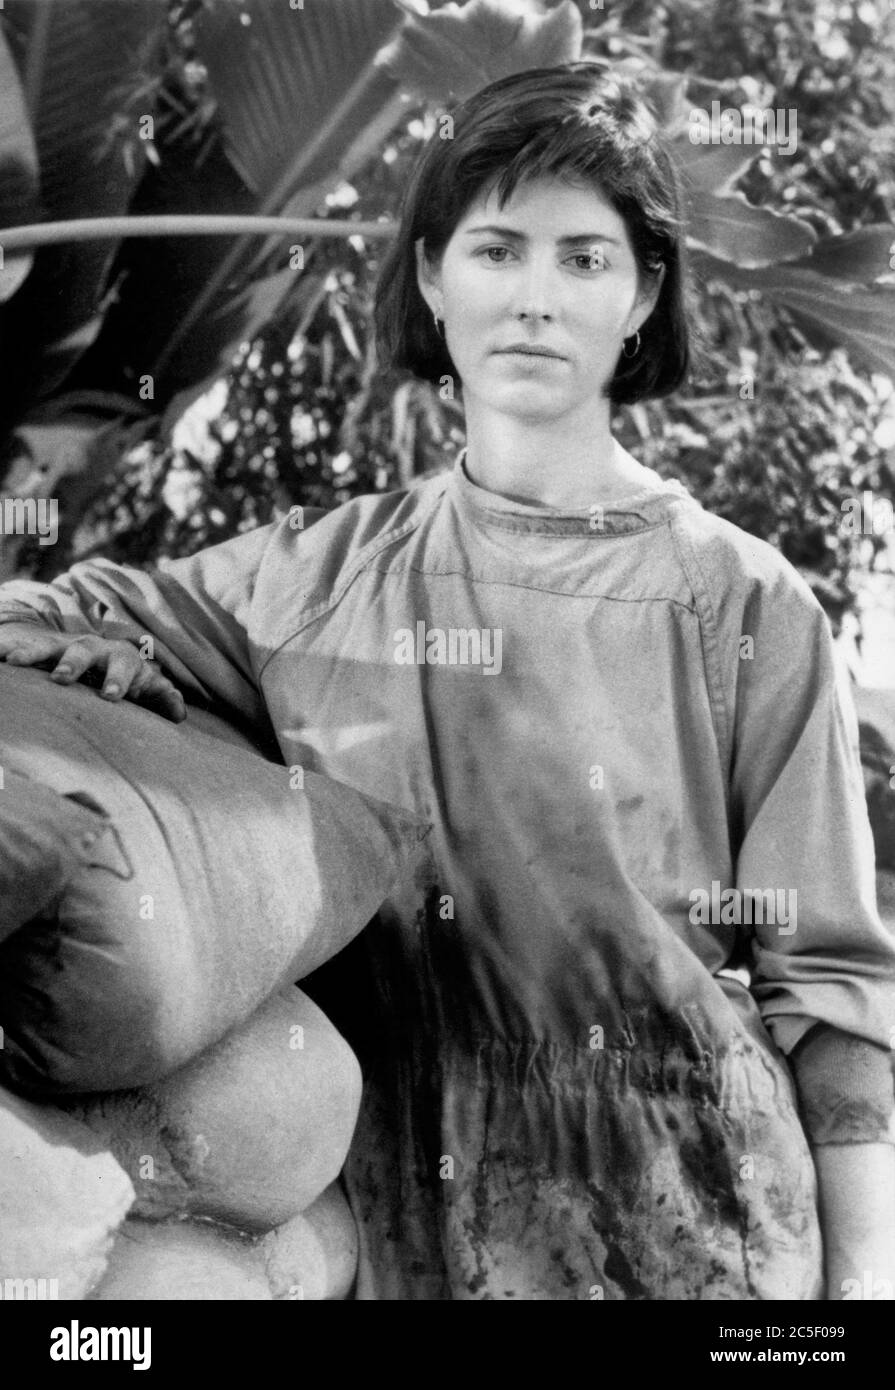 Dana Delany, on-set of the Drama TV Series, 'China Beach', ABC-TV, 1988 Stock Photo